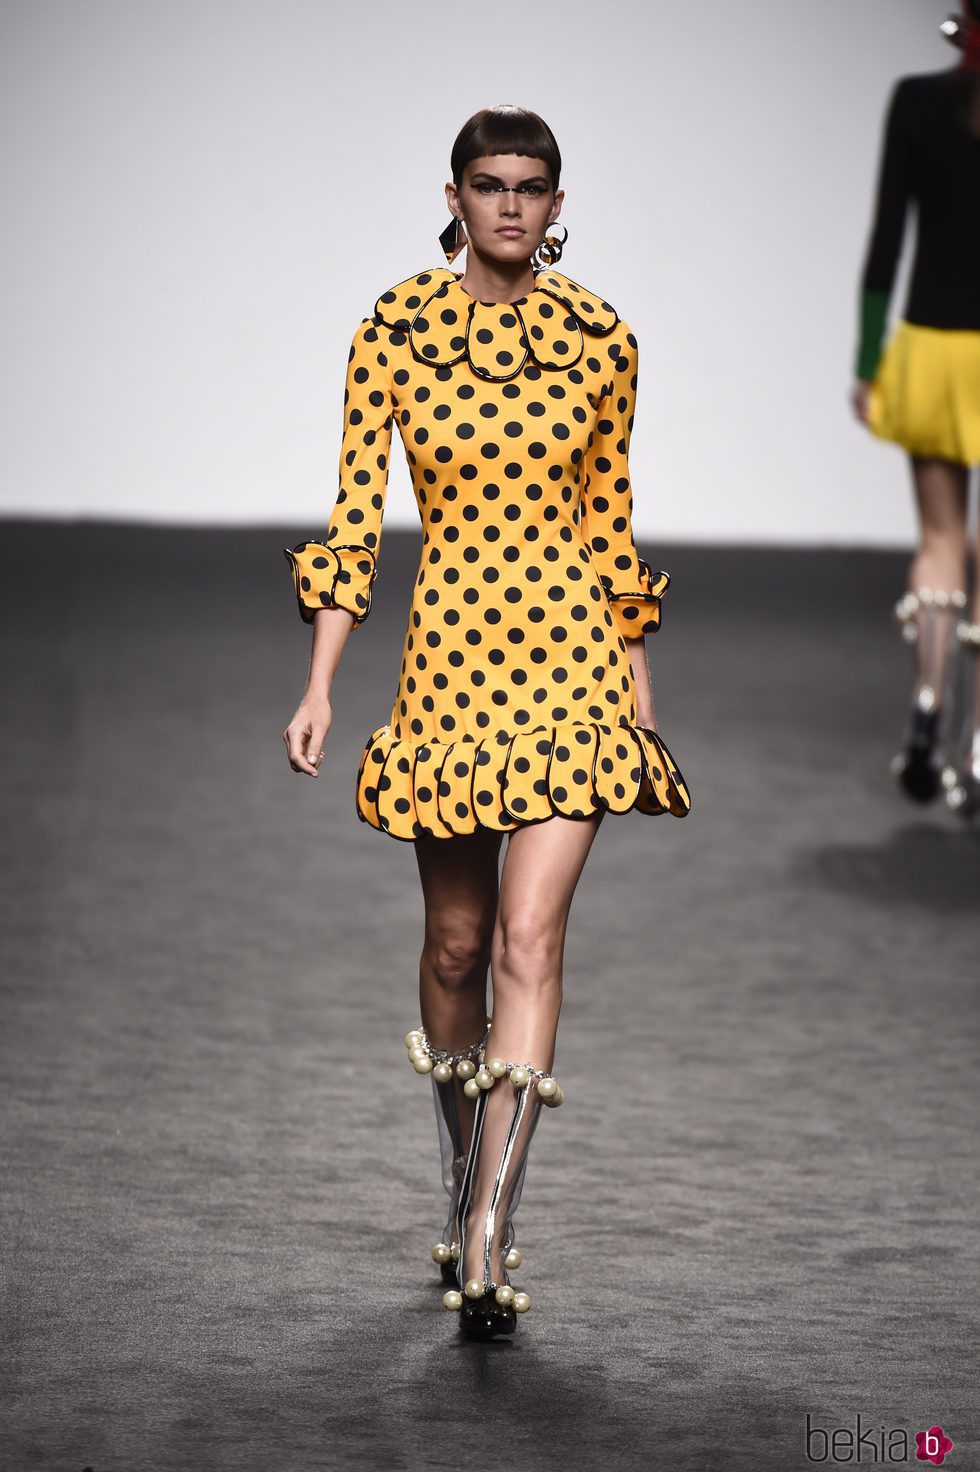 Vestido de lunares amarillo de María Escote de la campaña otoño/invierno 2018/2019 en la Madrid Fashion Week